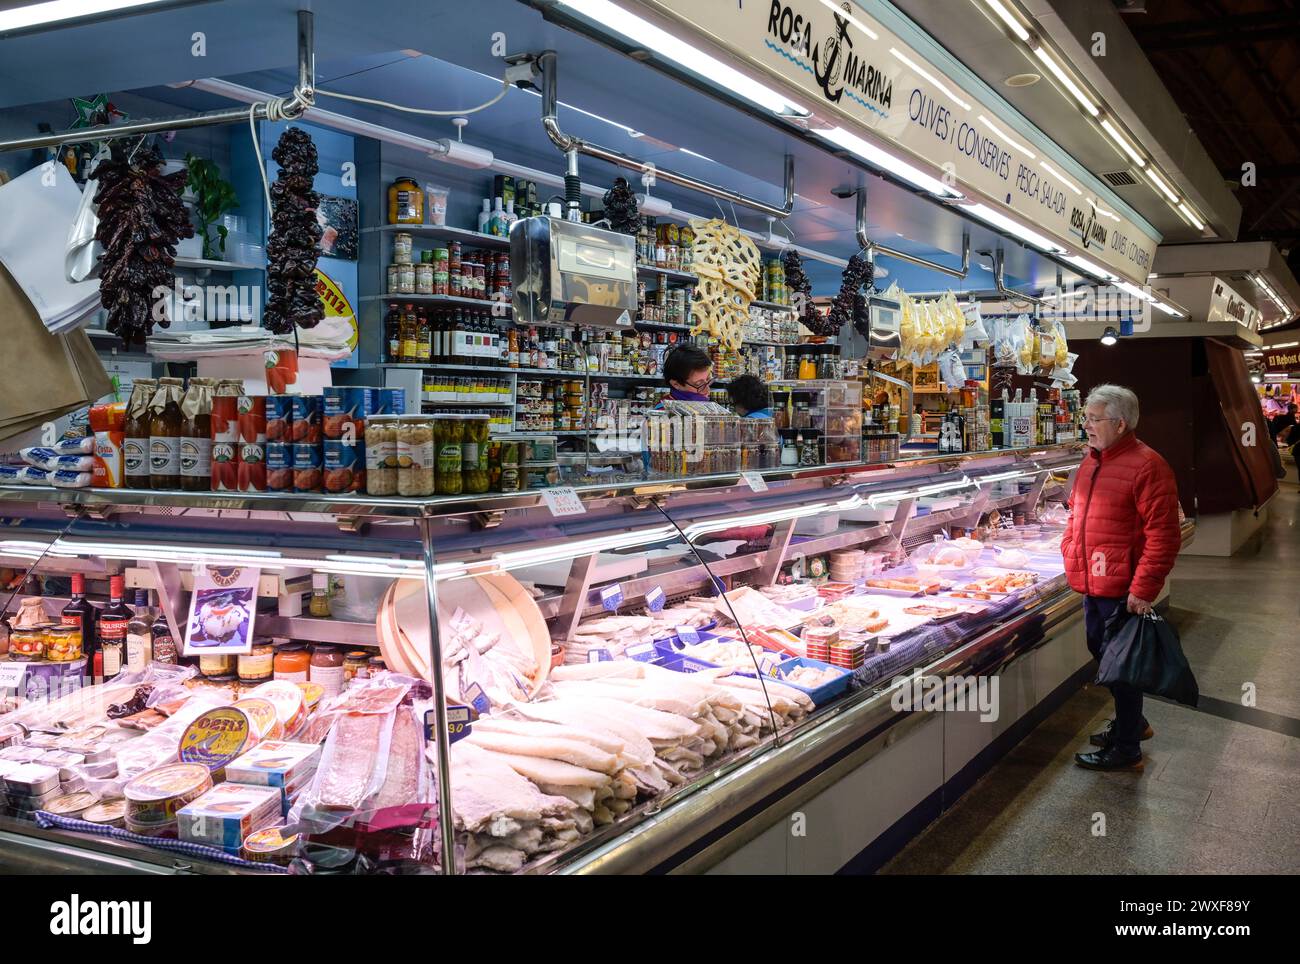 Trockenfisch und Eingelegtes, Markthalle Mercat de Santa Caterina, Barcelona, Katalonien, Spanien Stock Photo